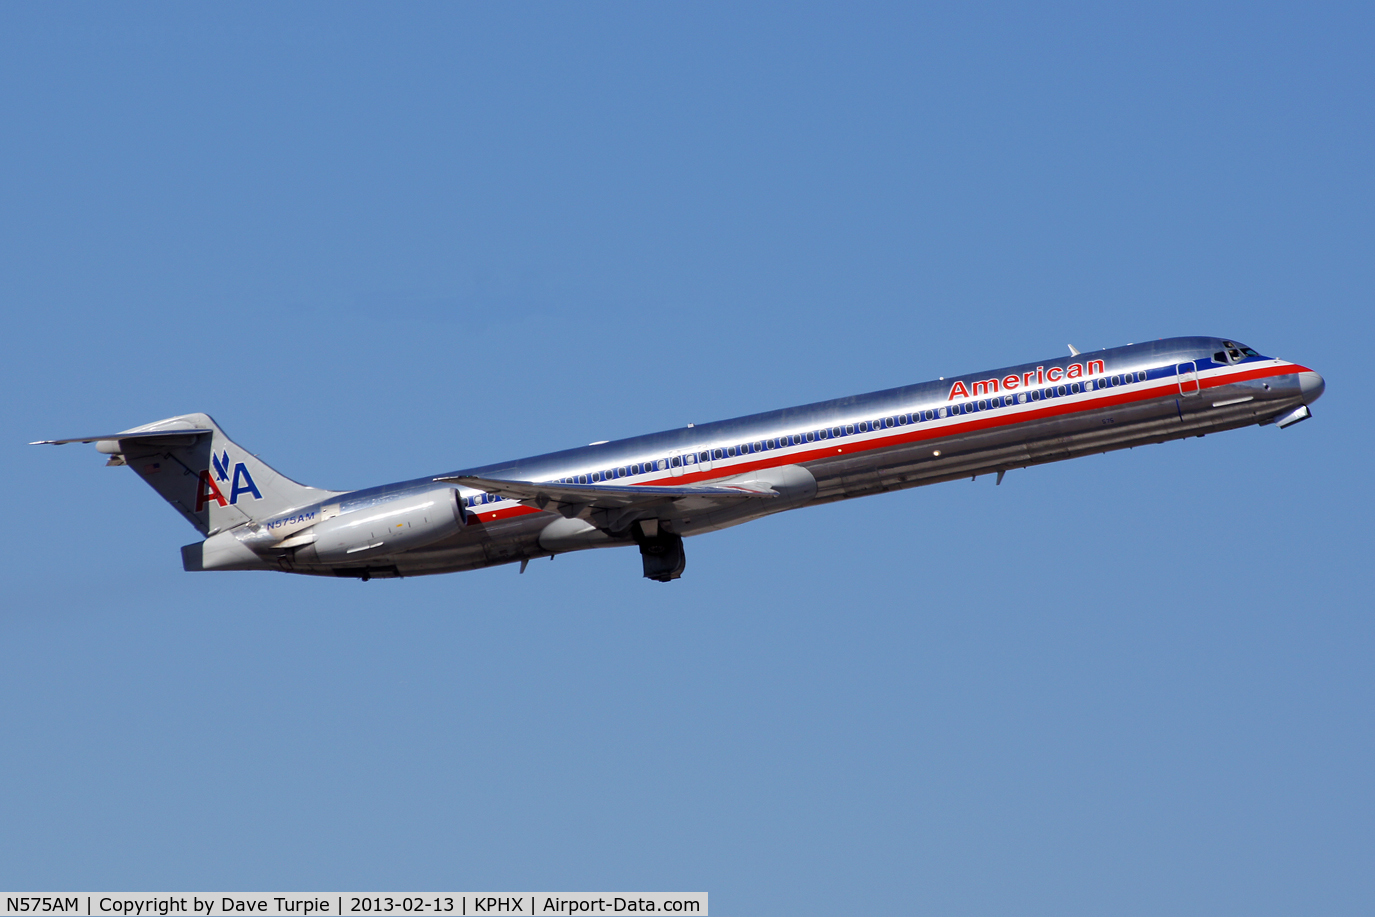 N575AM, 1991 McDonnell Douglas MD-82 (DC-9-82) C/N 53152, No comment.